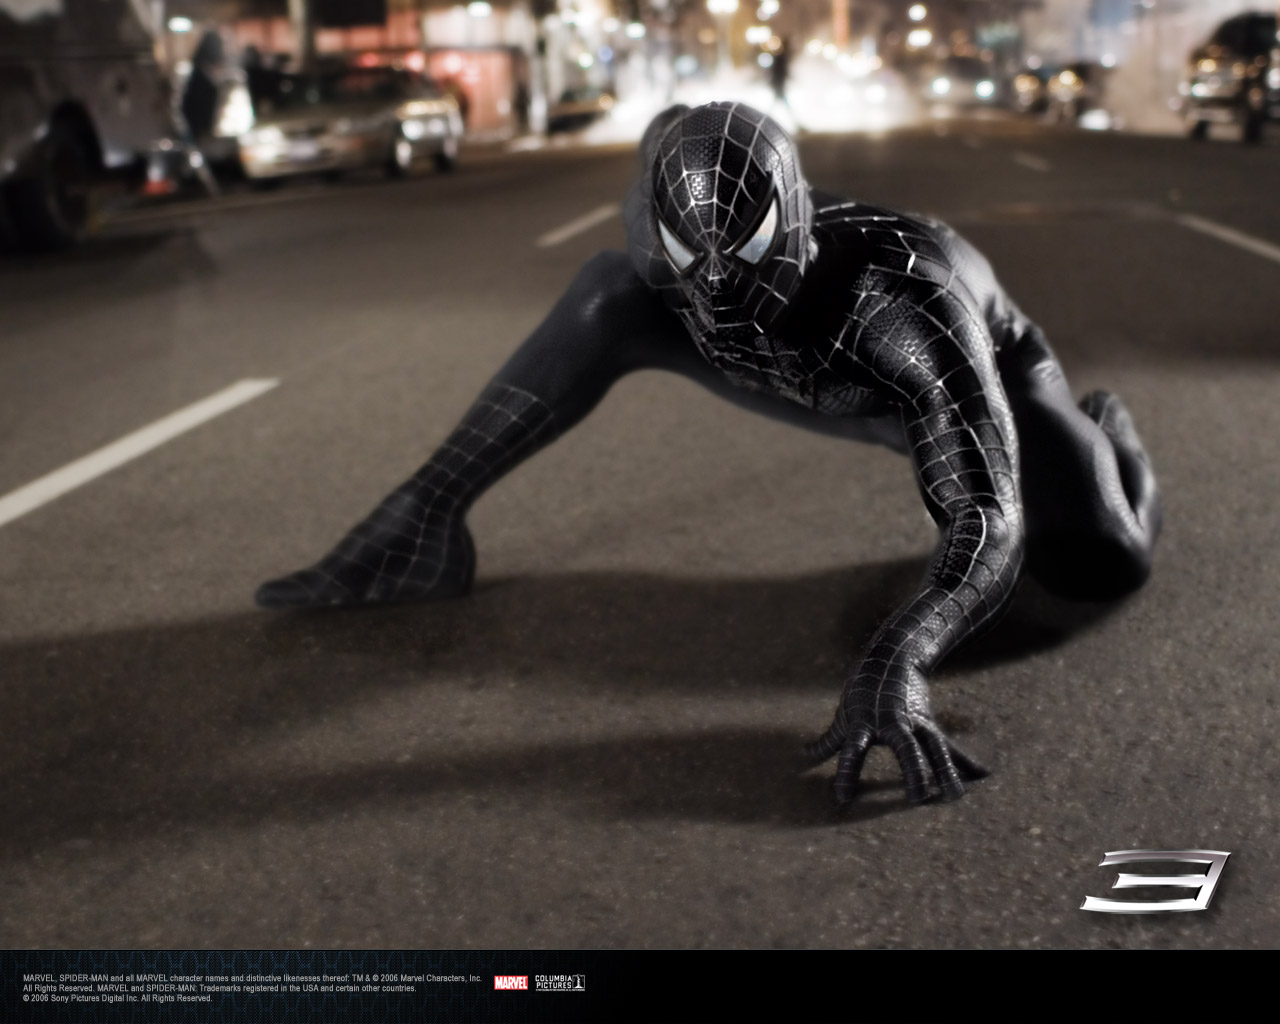 http://4.bp.blogspot.com/_kF3J2soAXgo/TUj3G0eMmzI/AAAAAAAAByE/bC3zJMBG2Qc/s1600/Spiderman3_Venom.jpg